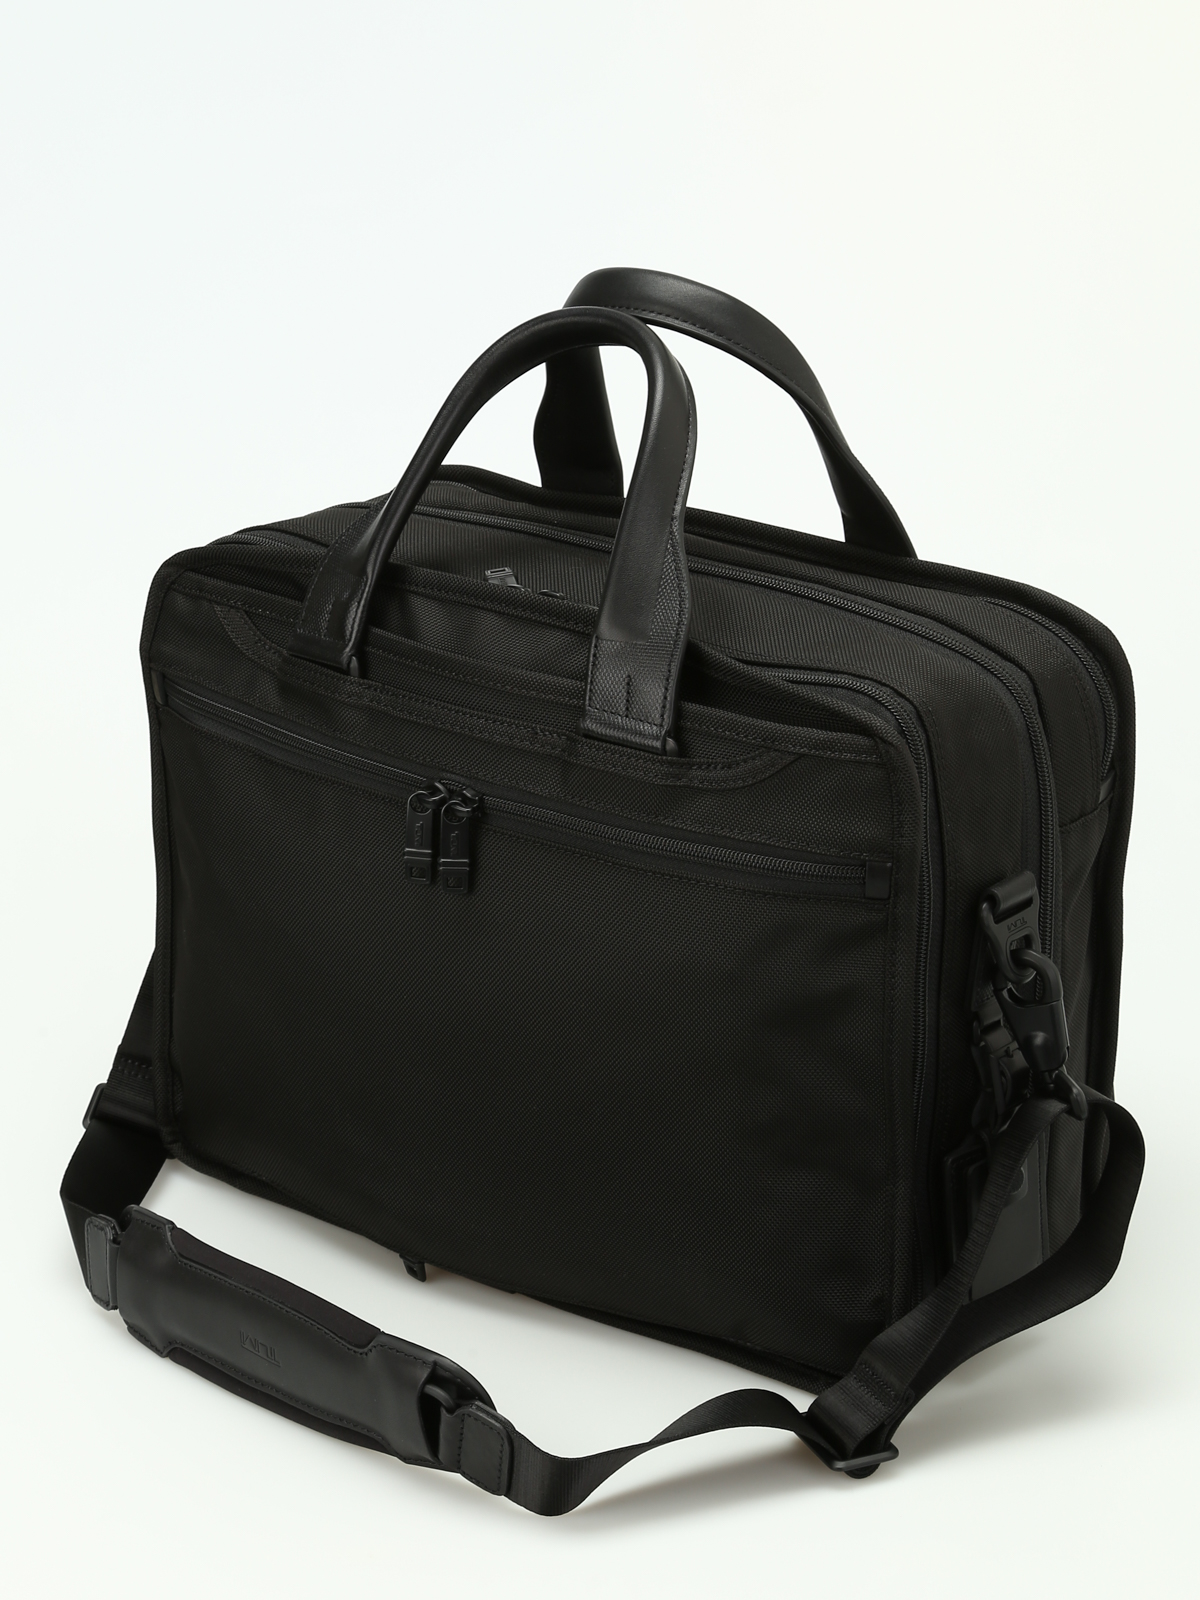 Laptop bags & briefcases Tumi - Alpha 2 expandable laptop